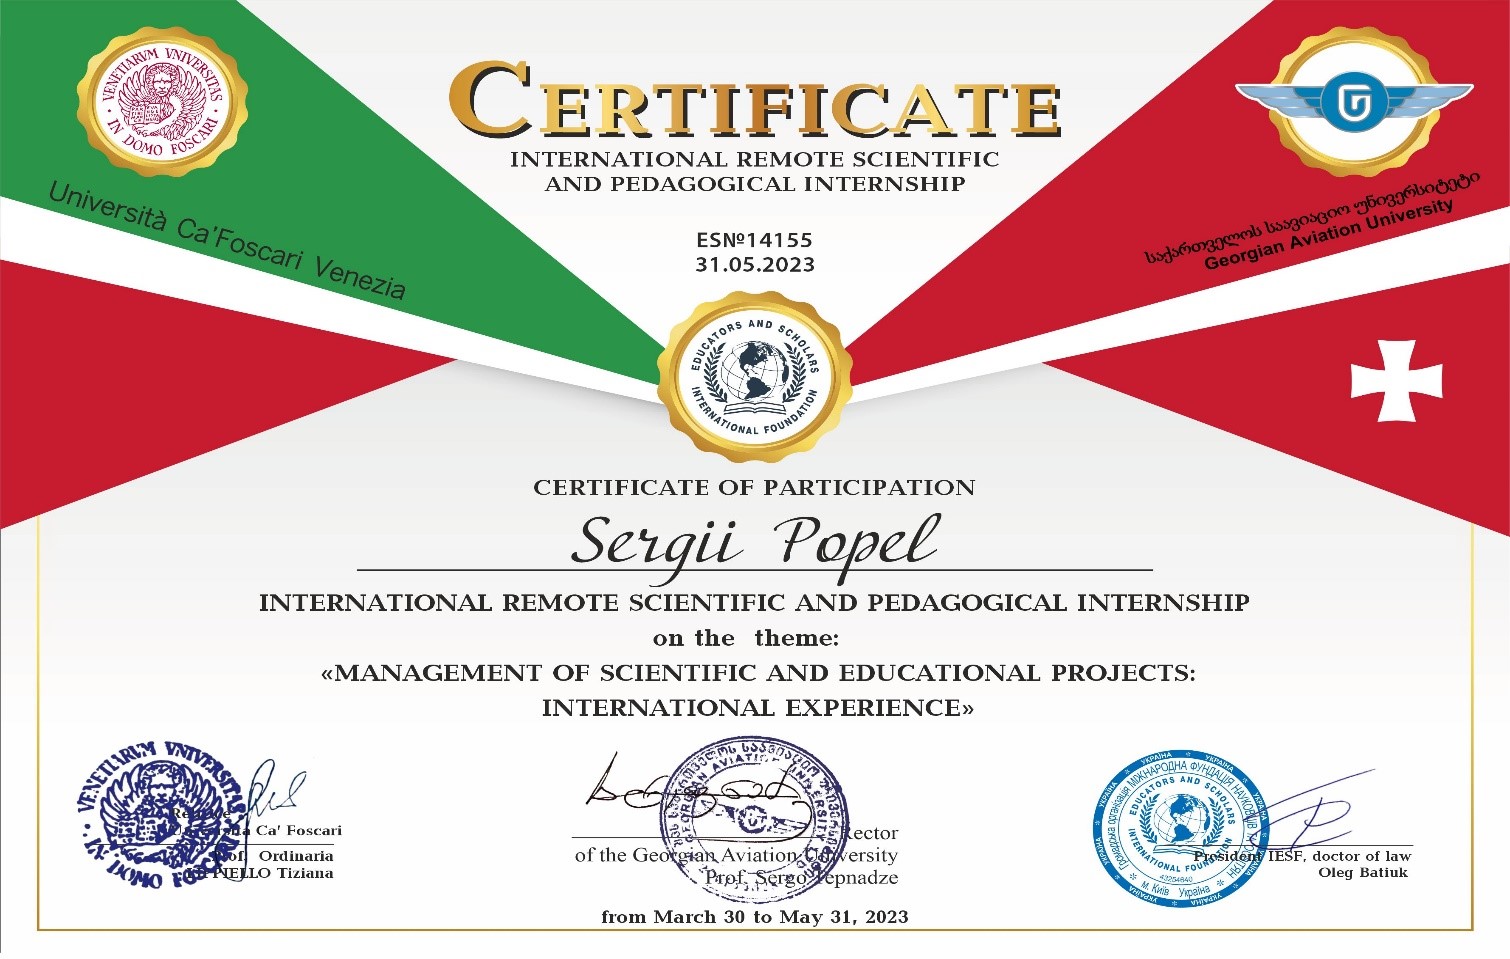 Міжнародне науково-педагогічне стажування «Управління науковими та освітніми проєктами: міжнародний досвід»